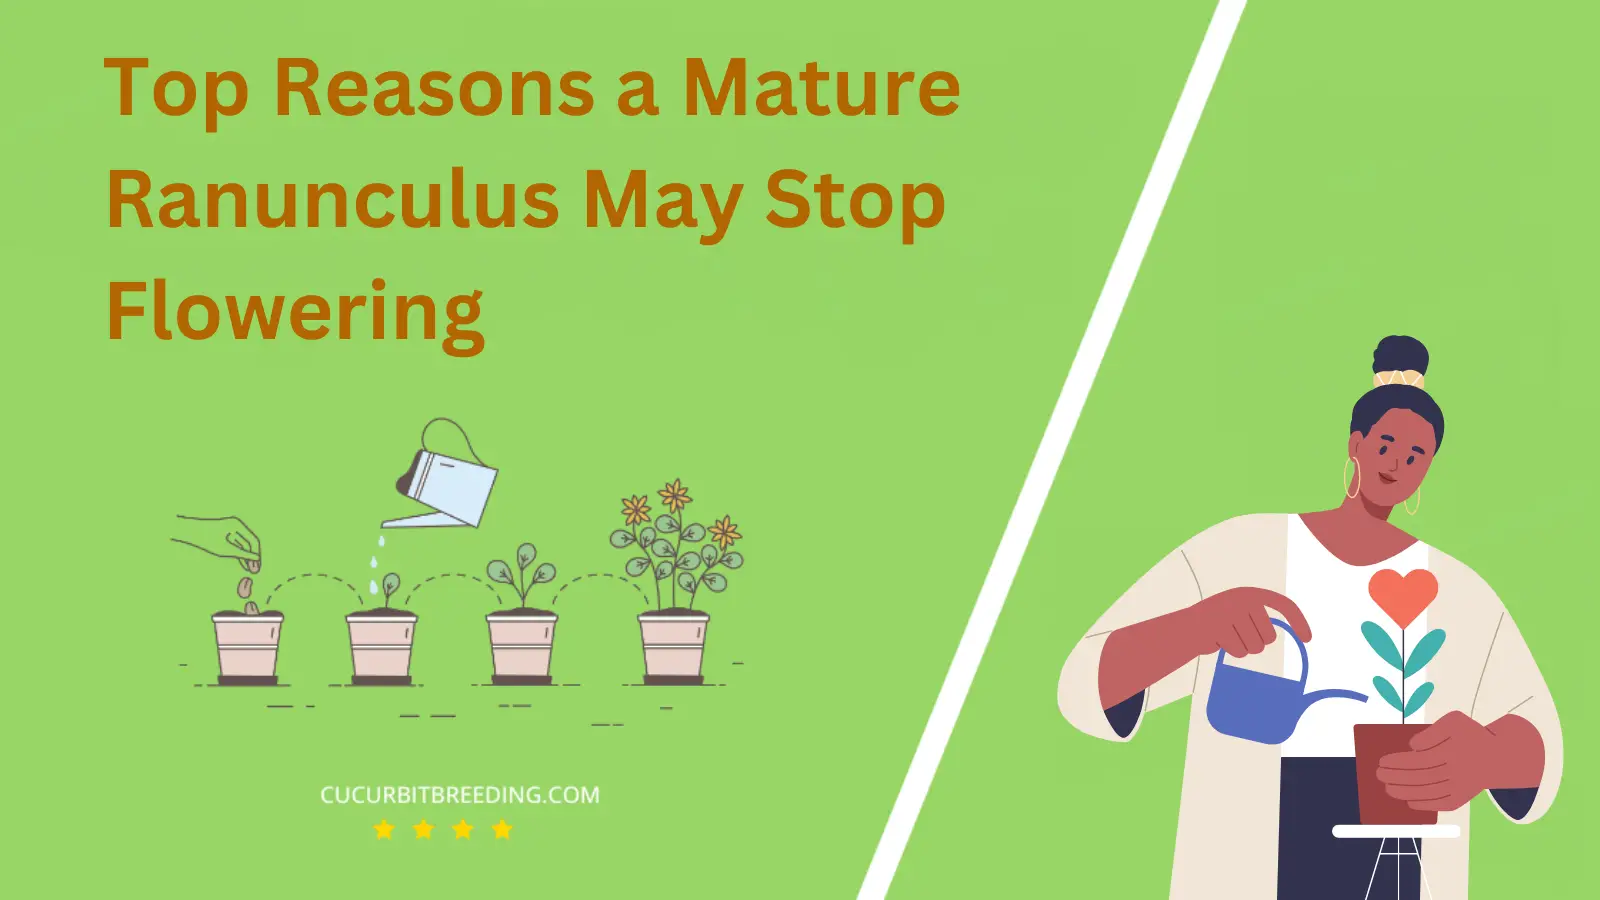 Top Reasons a Mature Ranunculus May Stop Flowering